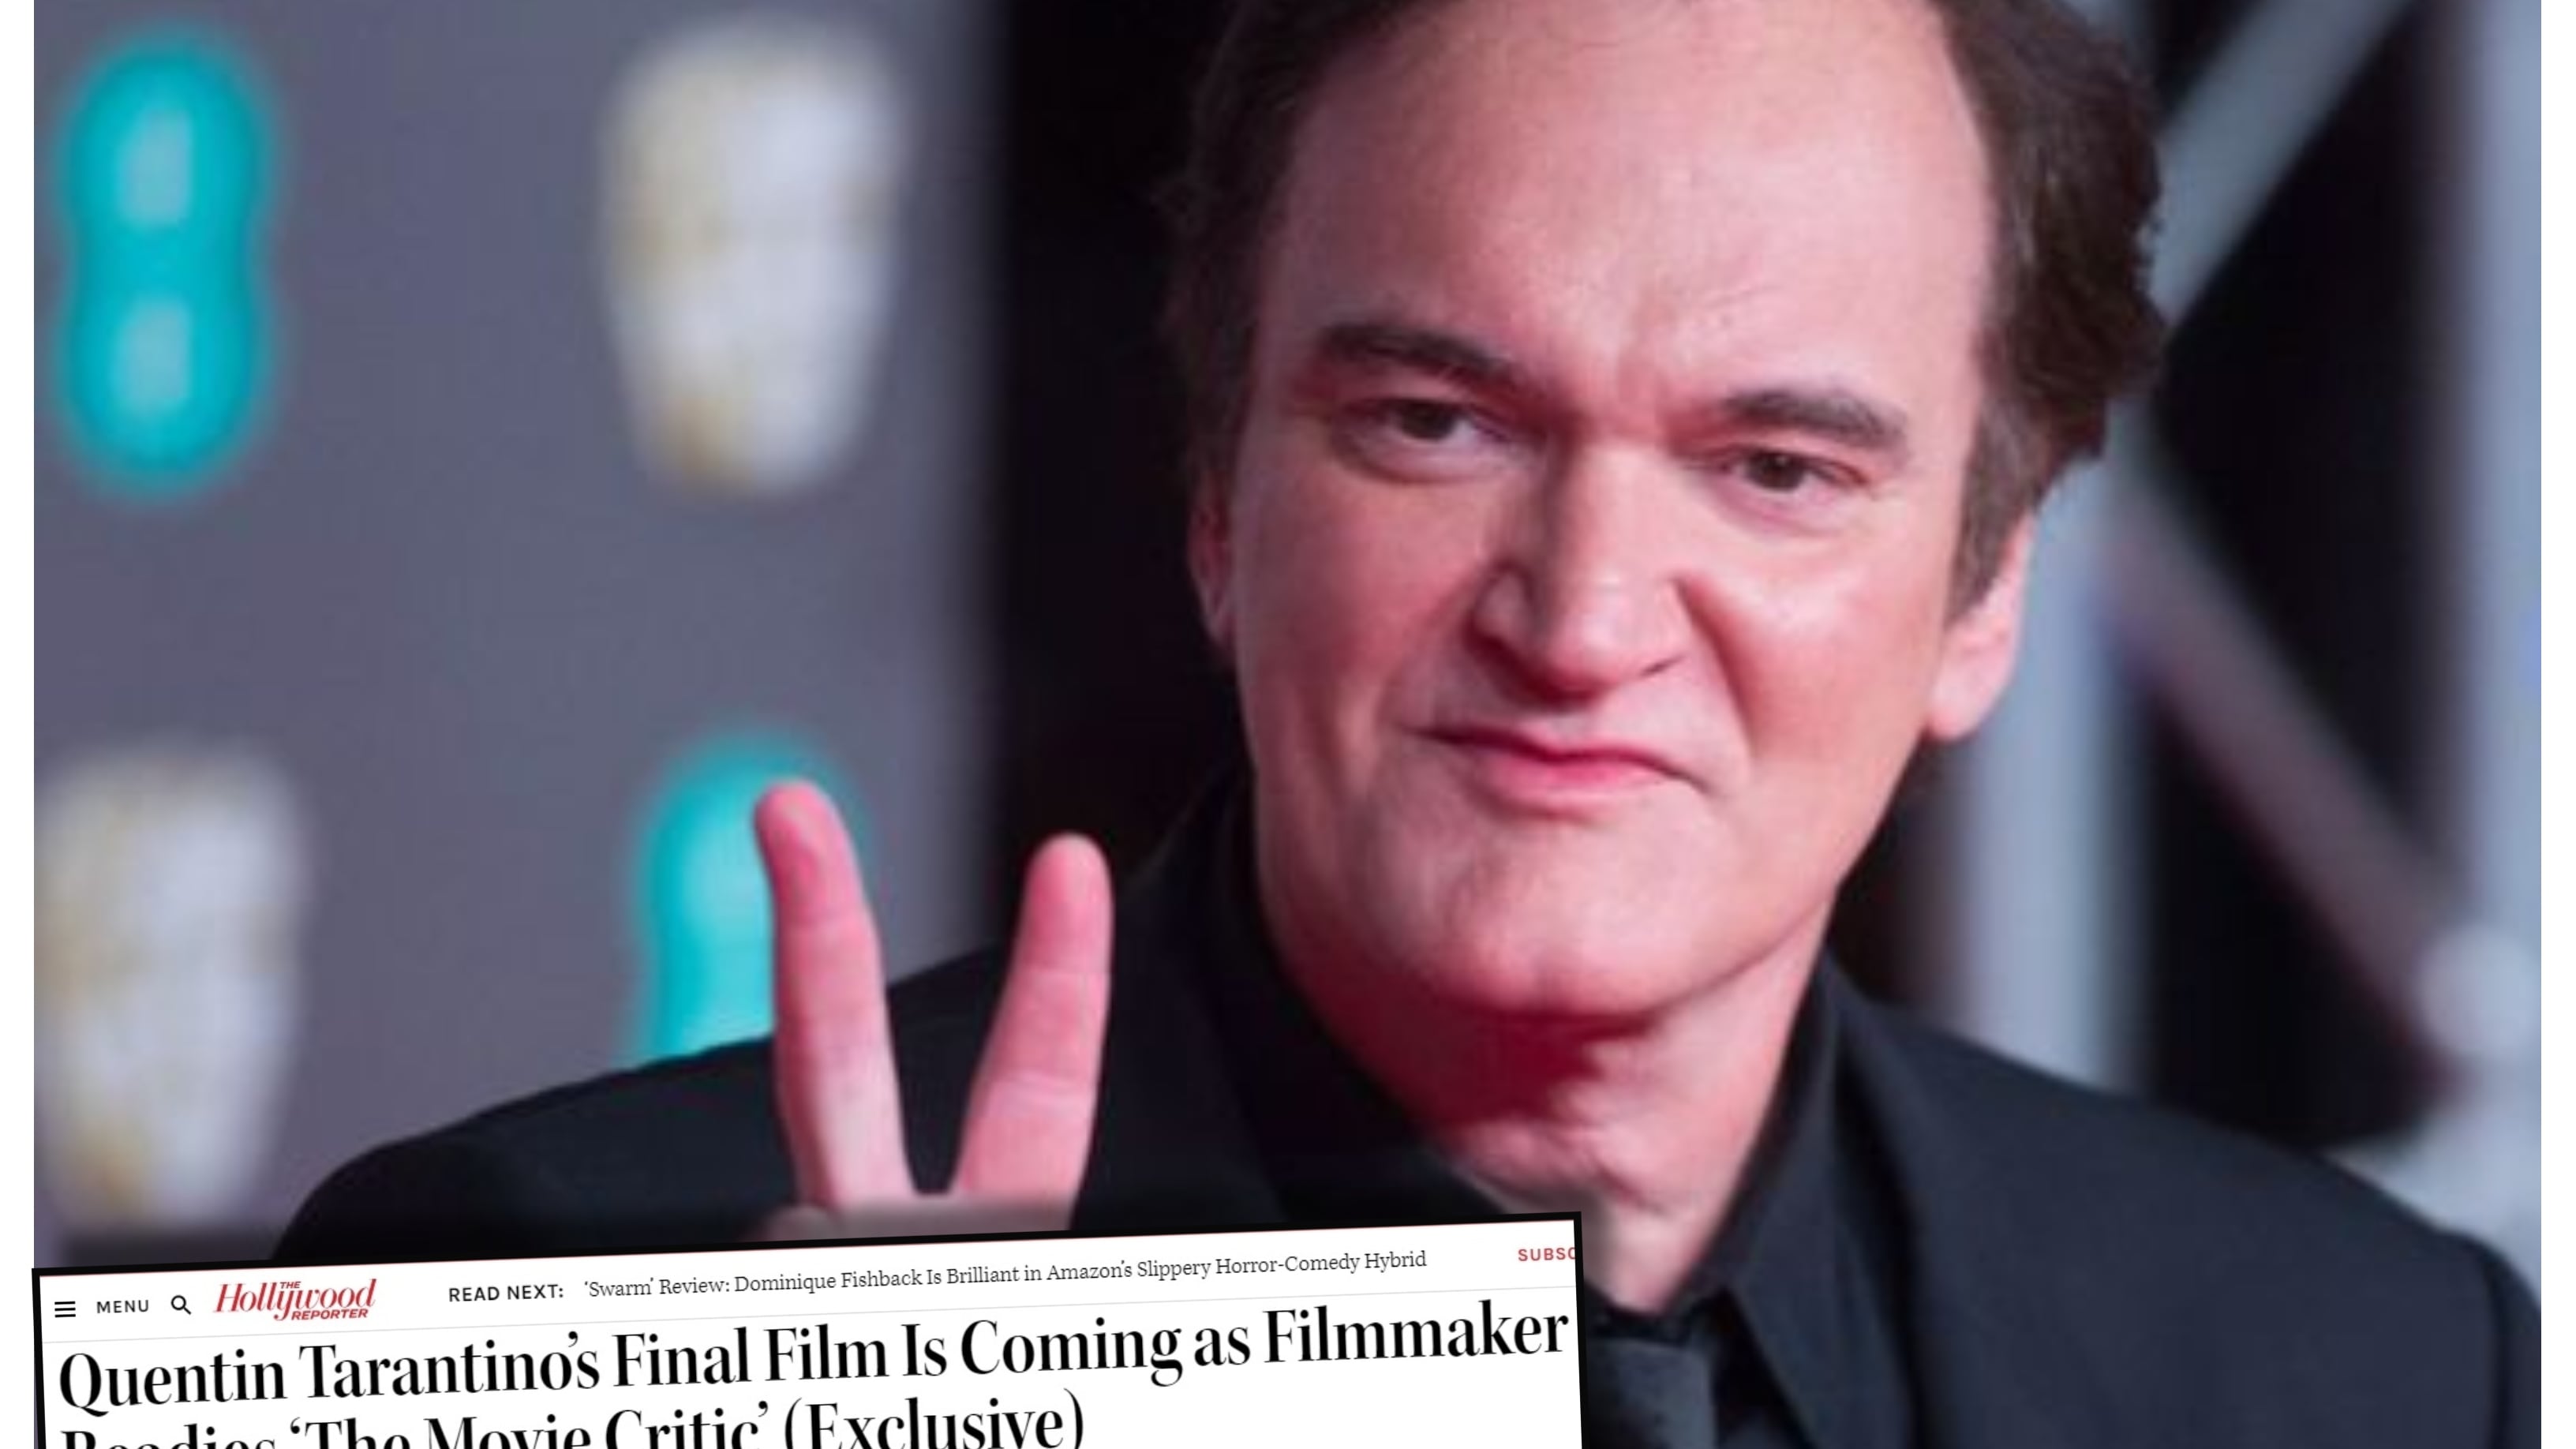 Una publicación del "The Hollywood Reporter" reveló los detalles del filme que prepara Tarantino para cerrar su carrera como director de cine.